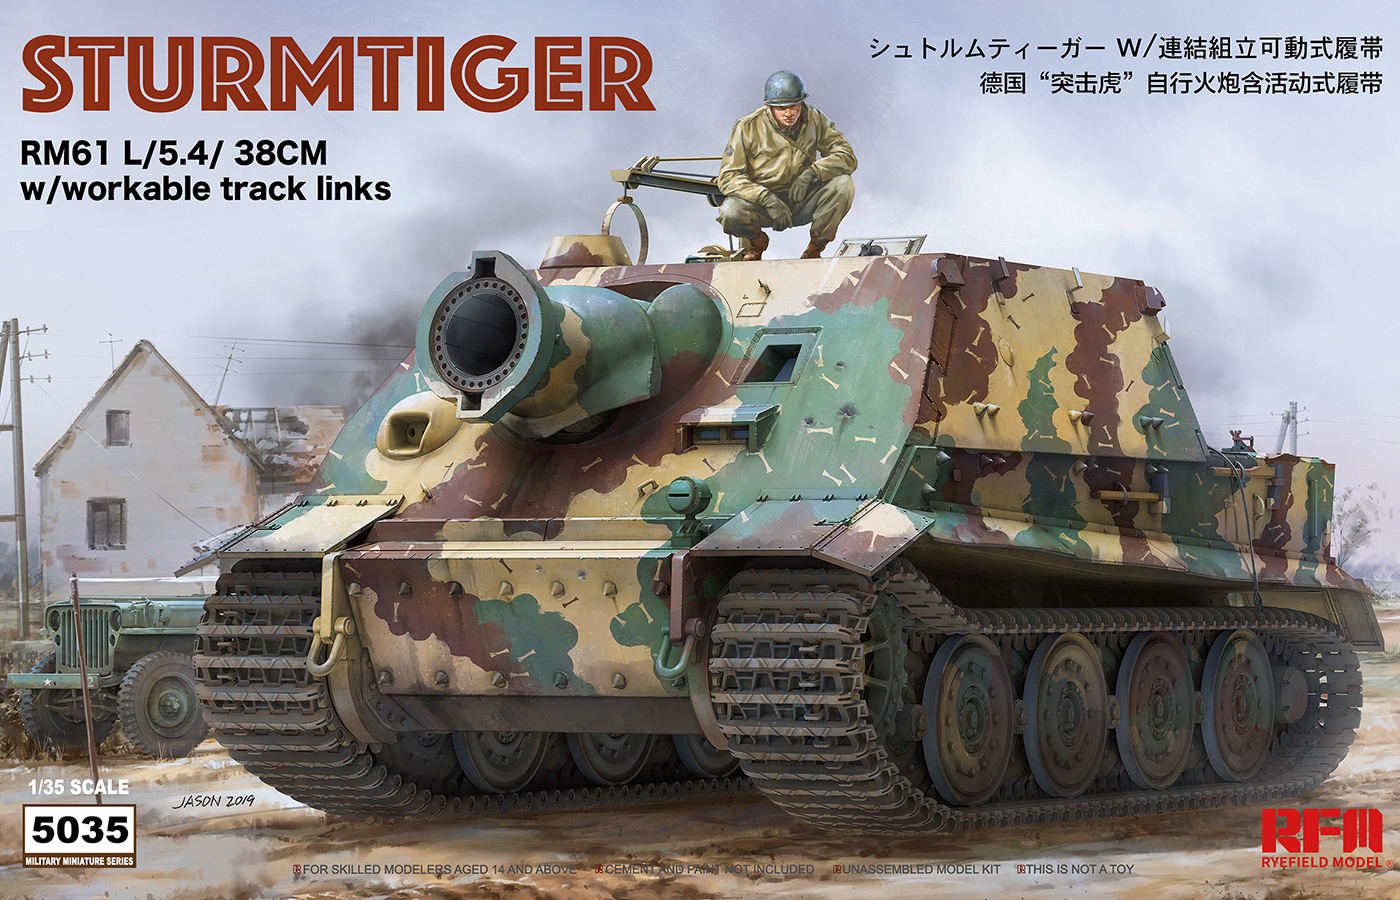 RM-5035  техника и вооружение  Sturmtiger RM61 L/5.4/38cm w/workable track  (1:35)